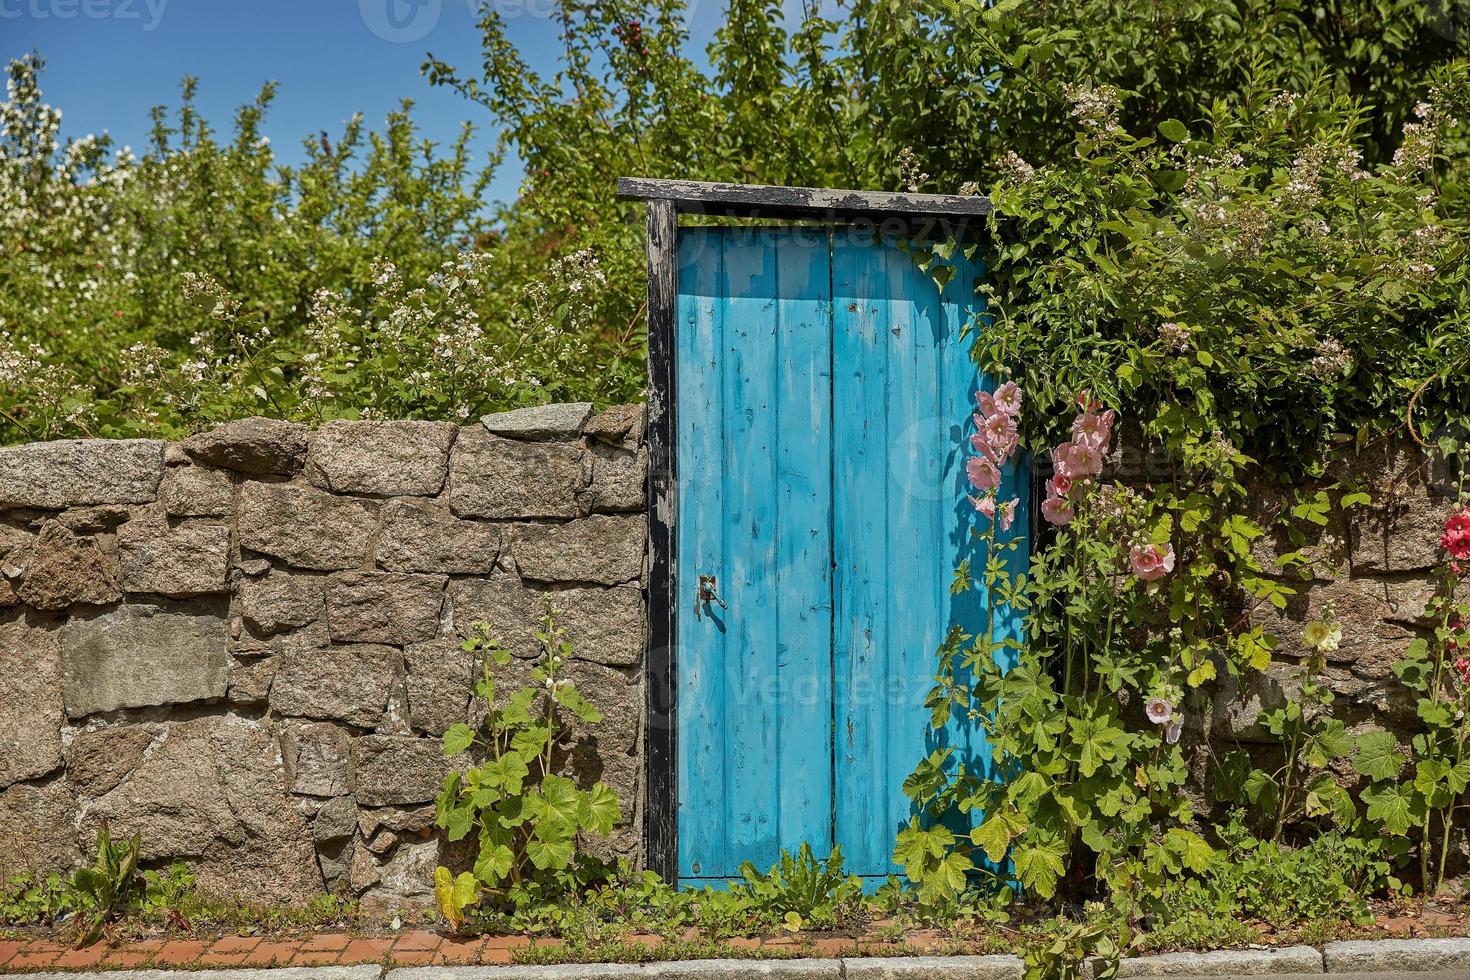 stenmur och blå dörr på bornholm ö i svaneke, danmark foto